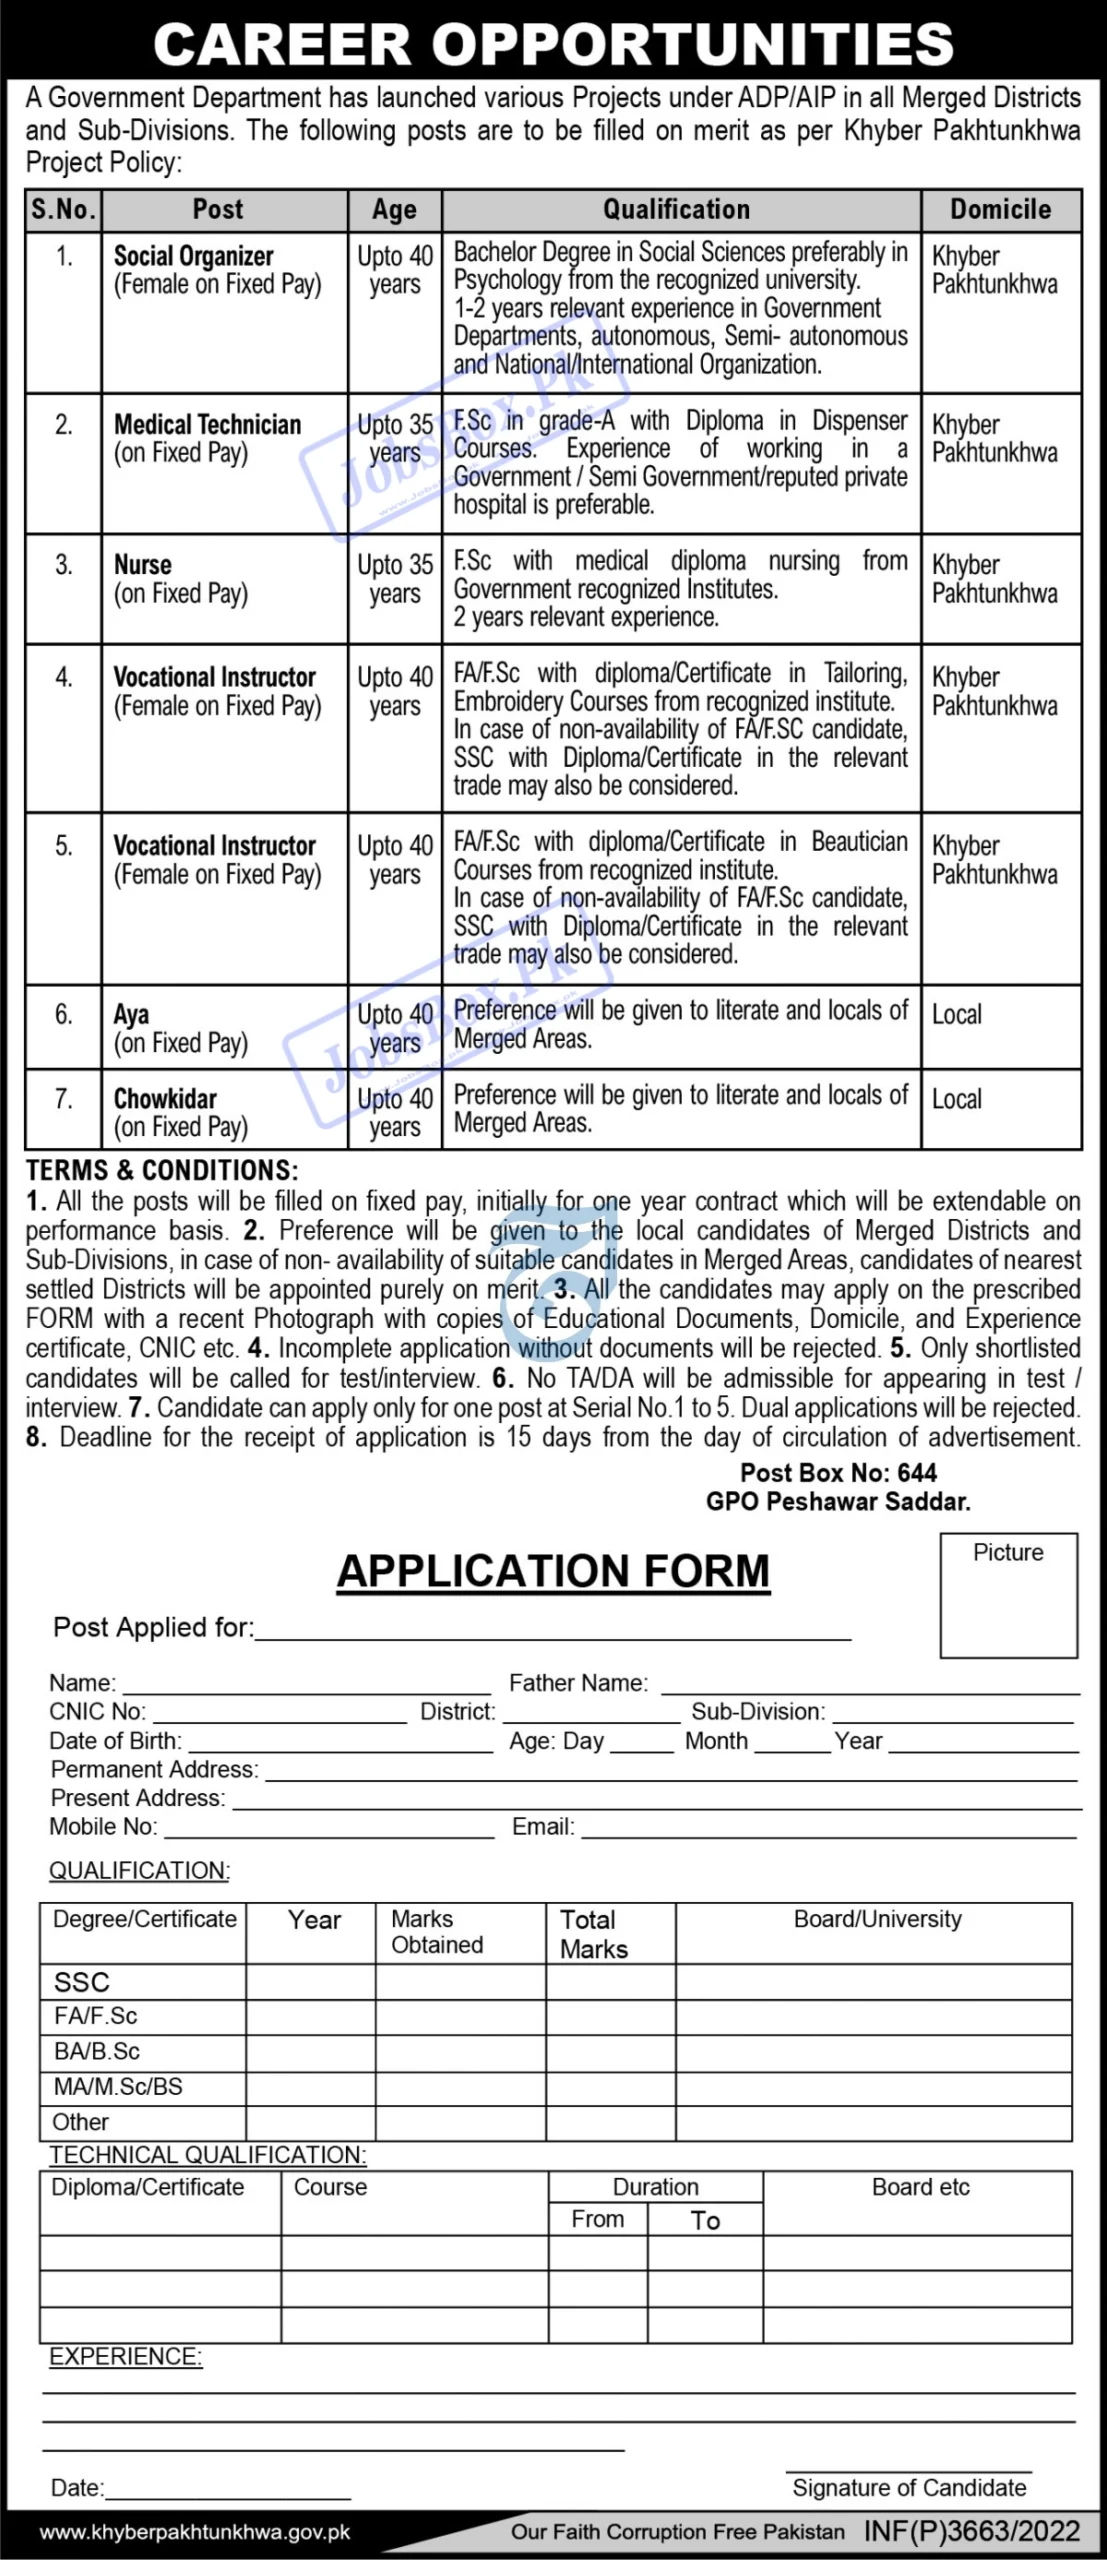 Government Department KPK PO Box 644 Peshawar Jobs 2022